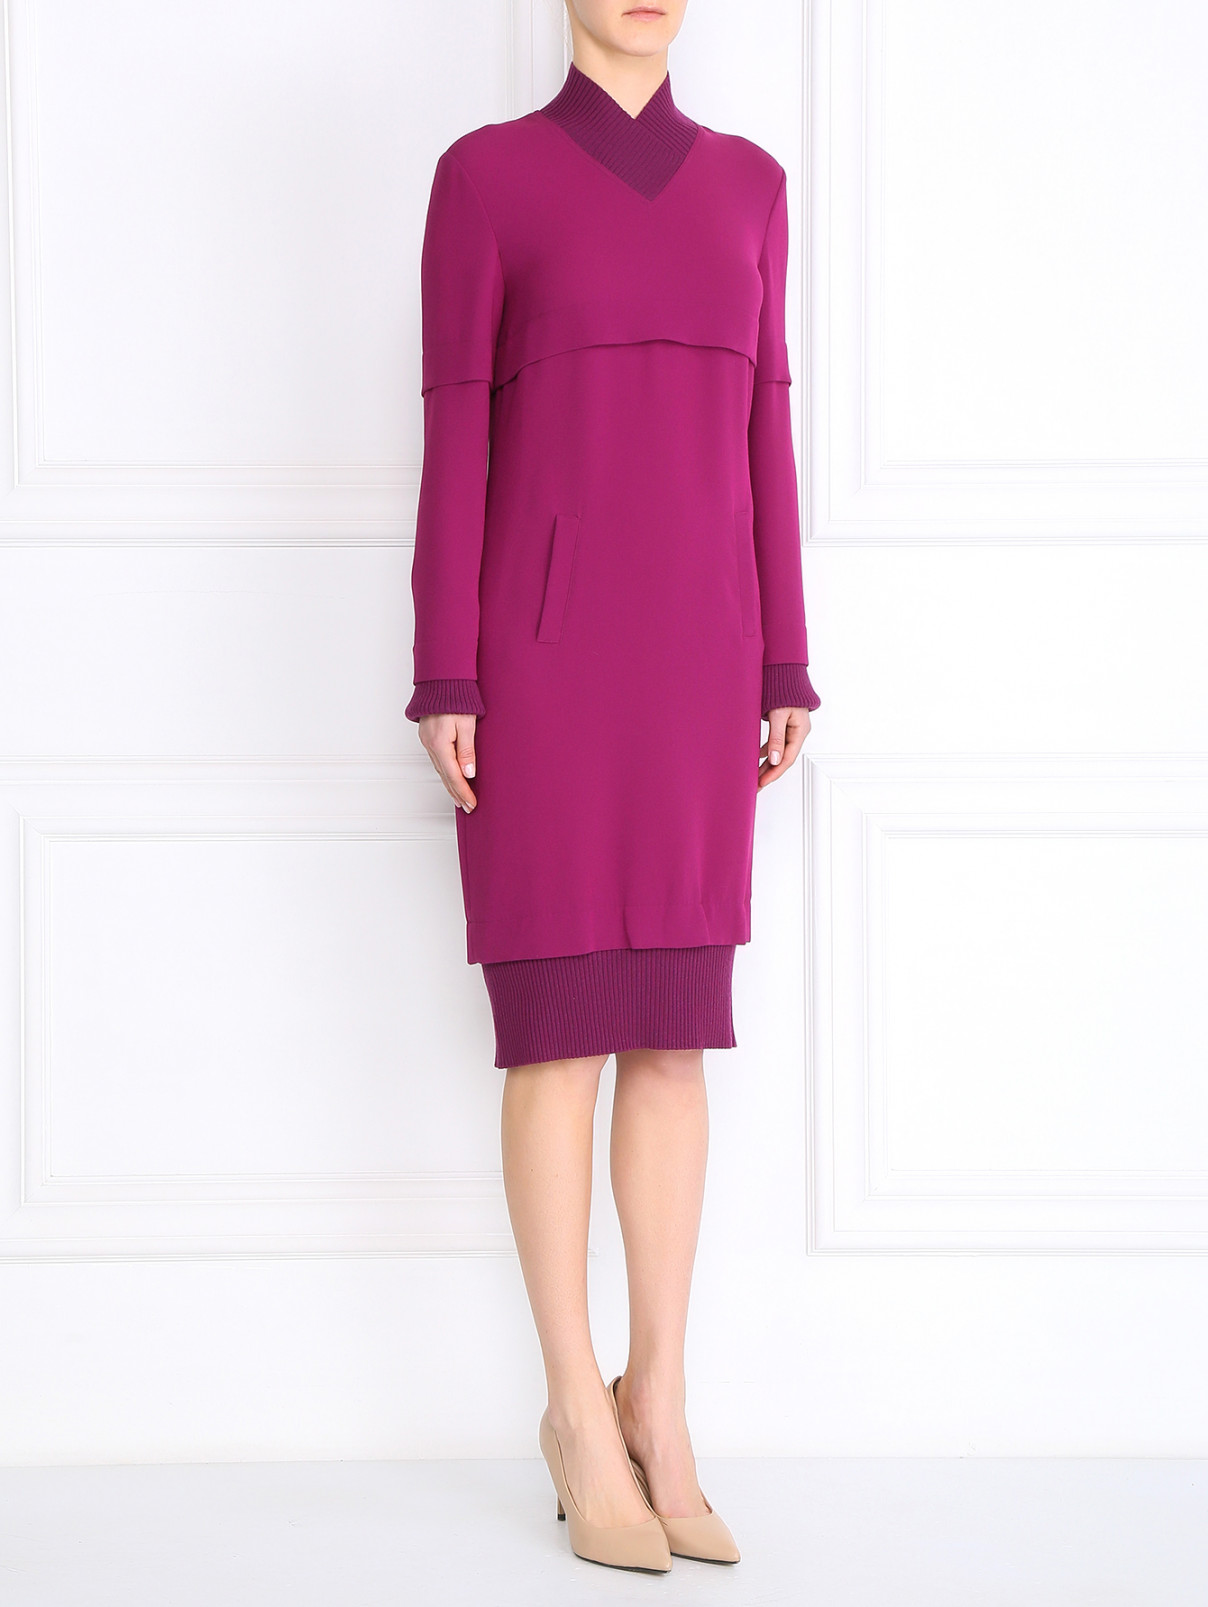 Платье прямого фасона с двумя боковыми карманами Jean Paul Gaultier  –  Модель Общий вид  – Цвет:  Фиолетовый